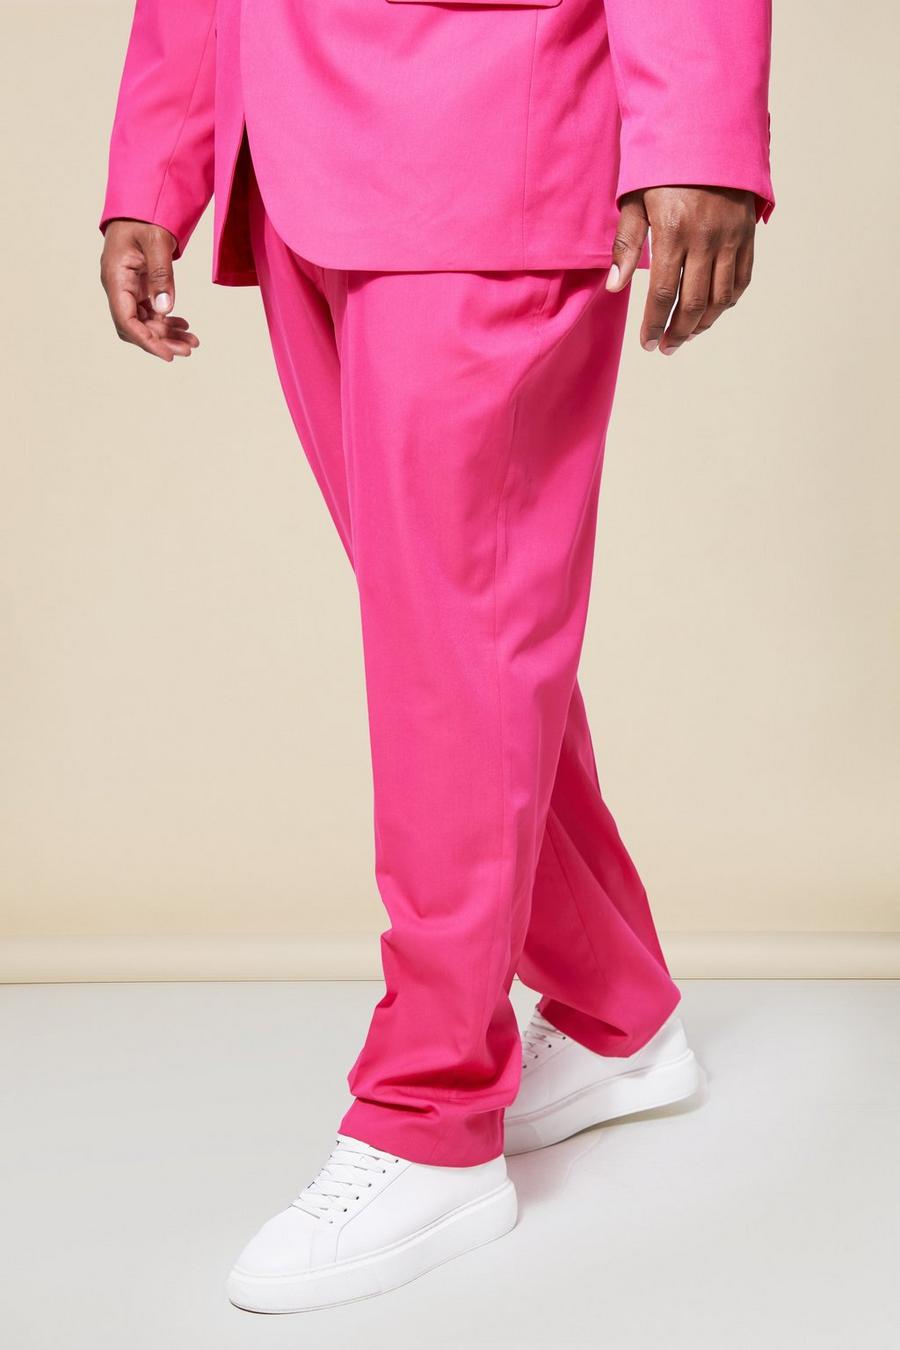 ורוד rosa מכנסי חליפה בגזרה צרה, מידות גדולות